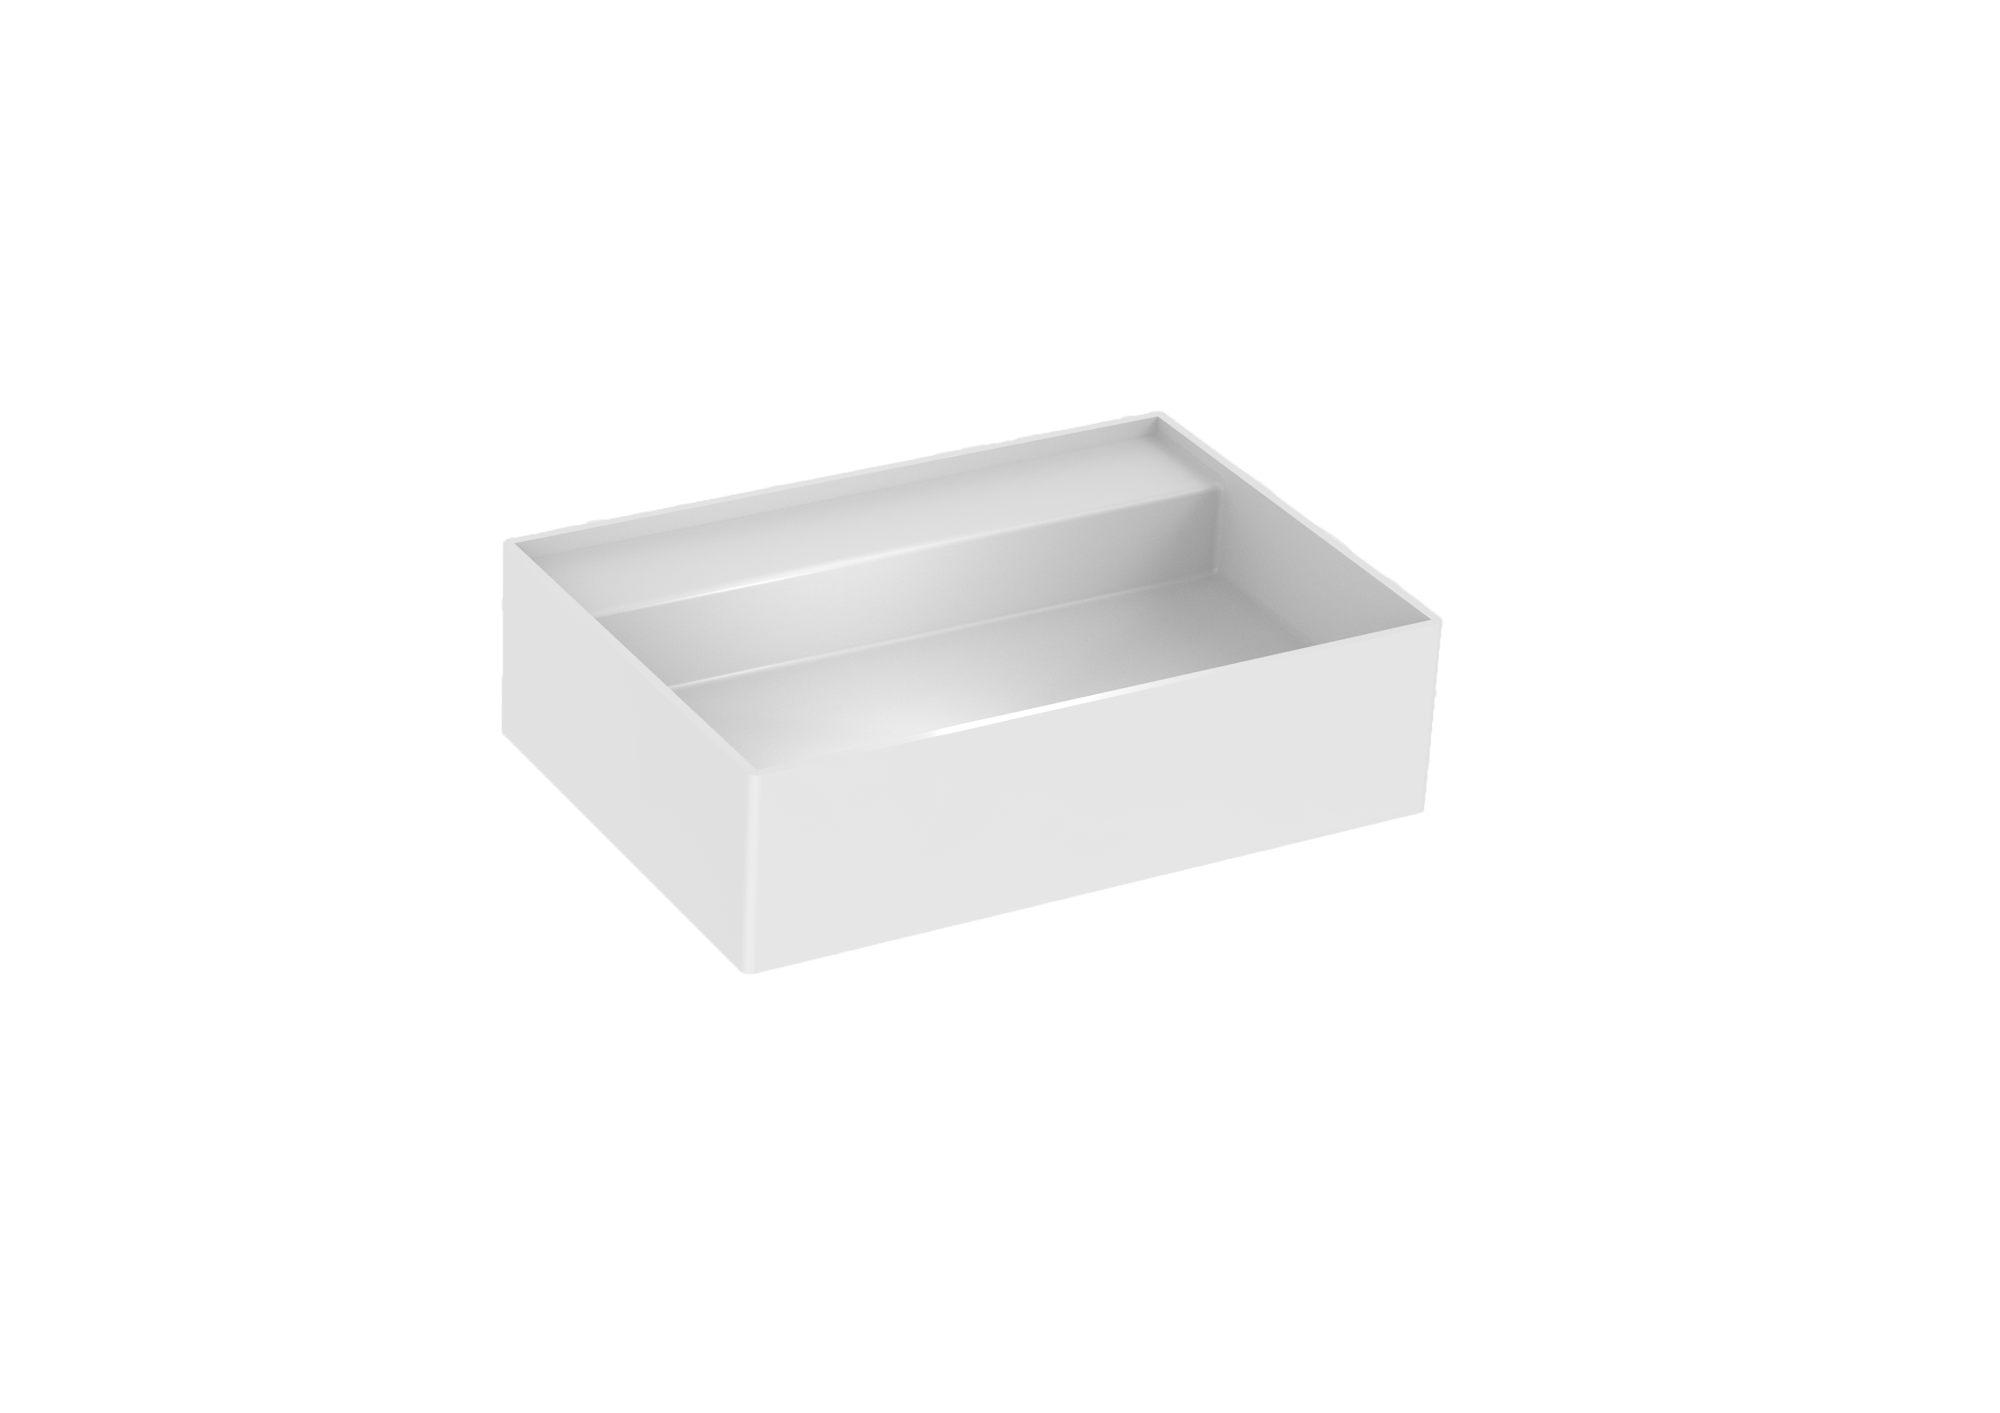 ICON 50x35cm countertop washbasin 0TH - Matte White